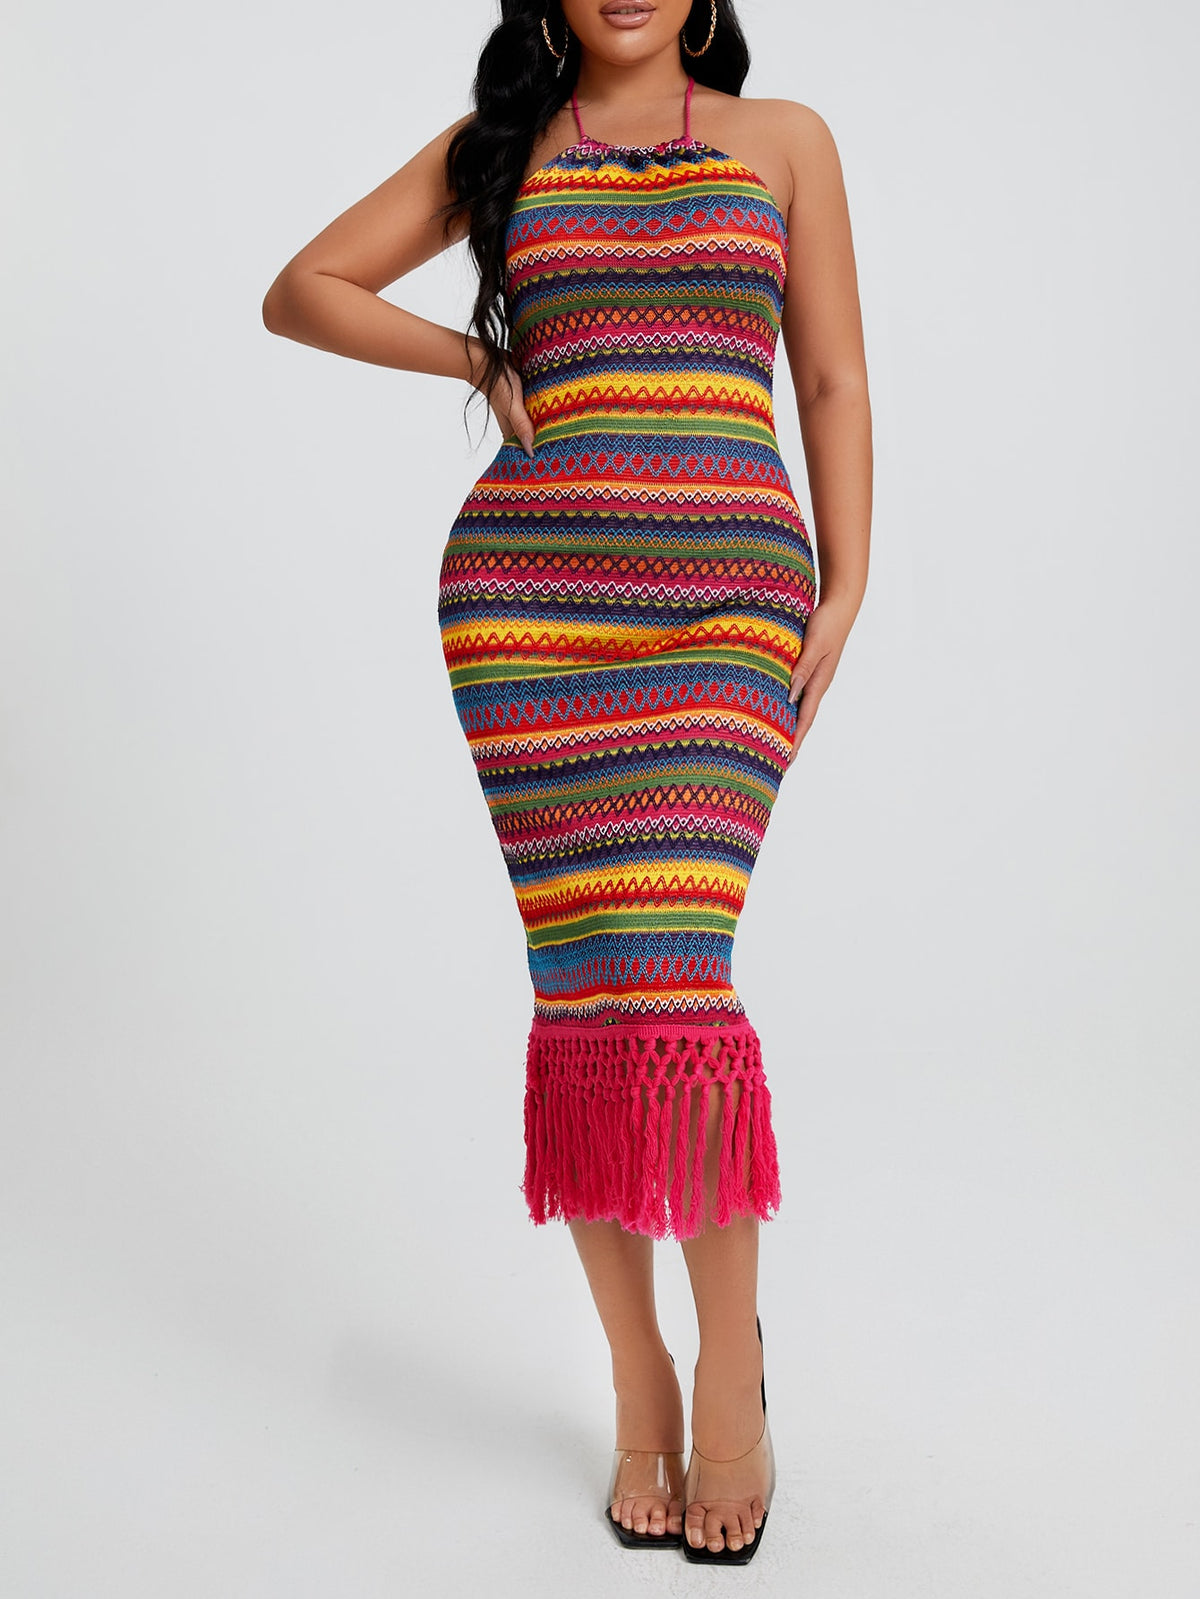 Boho Halter Dress with Fringe Hem - Multicolor / L